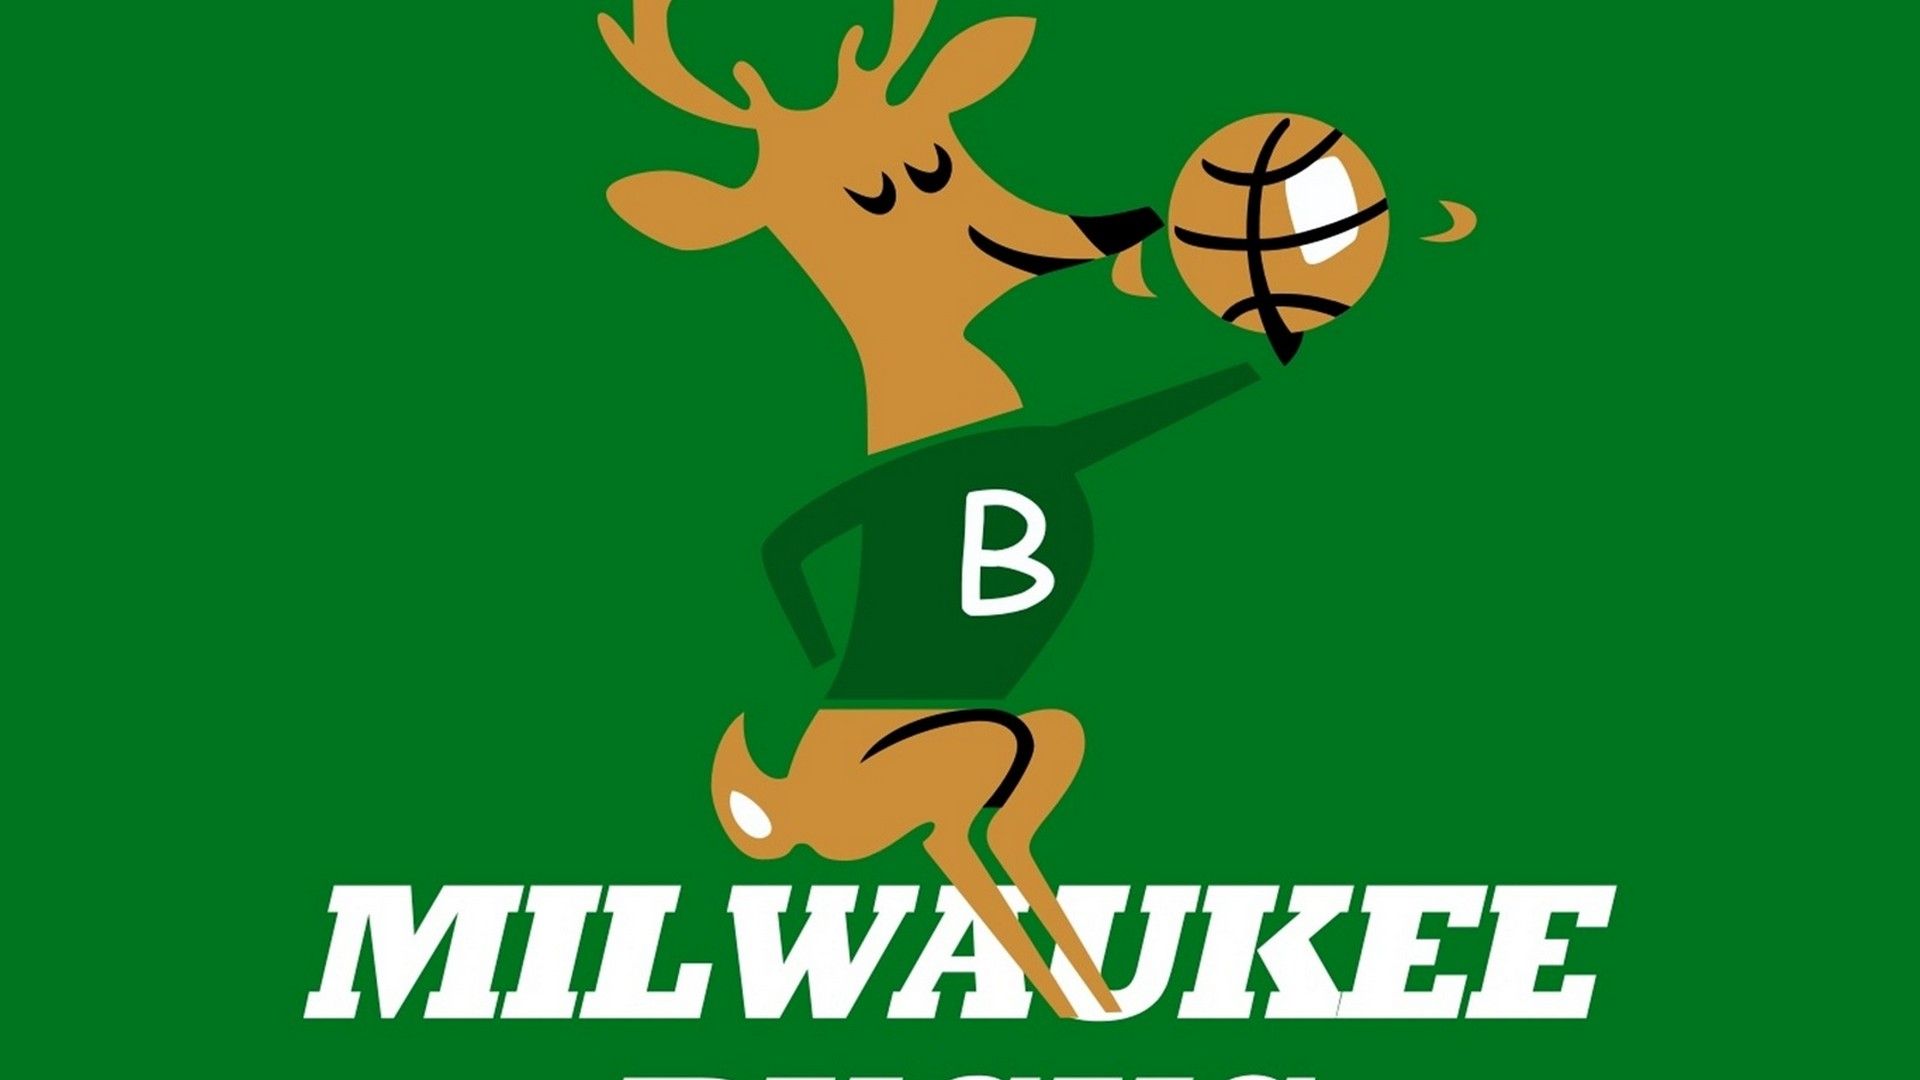 Milwaukee Bucks Logo Wallpaper  Basketball Wallpapers at  BasketWallpaperscom